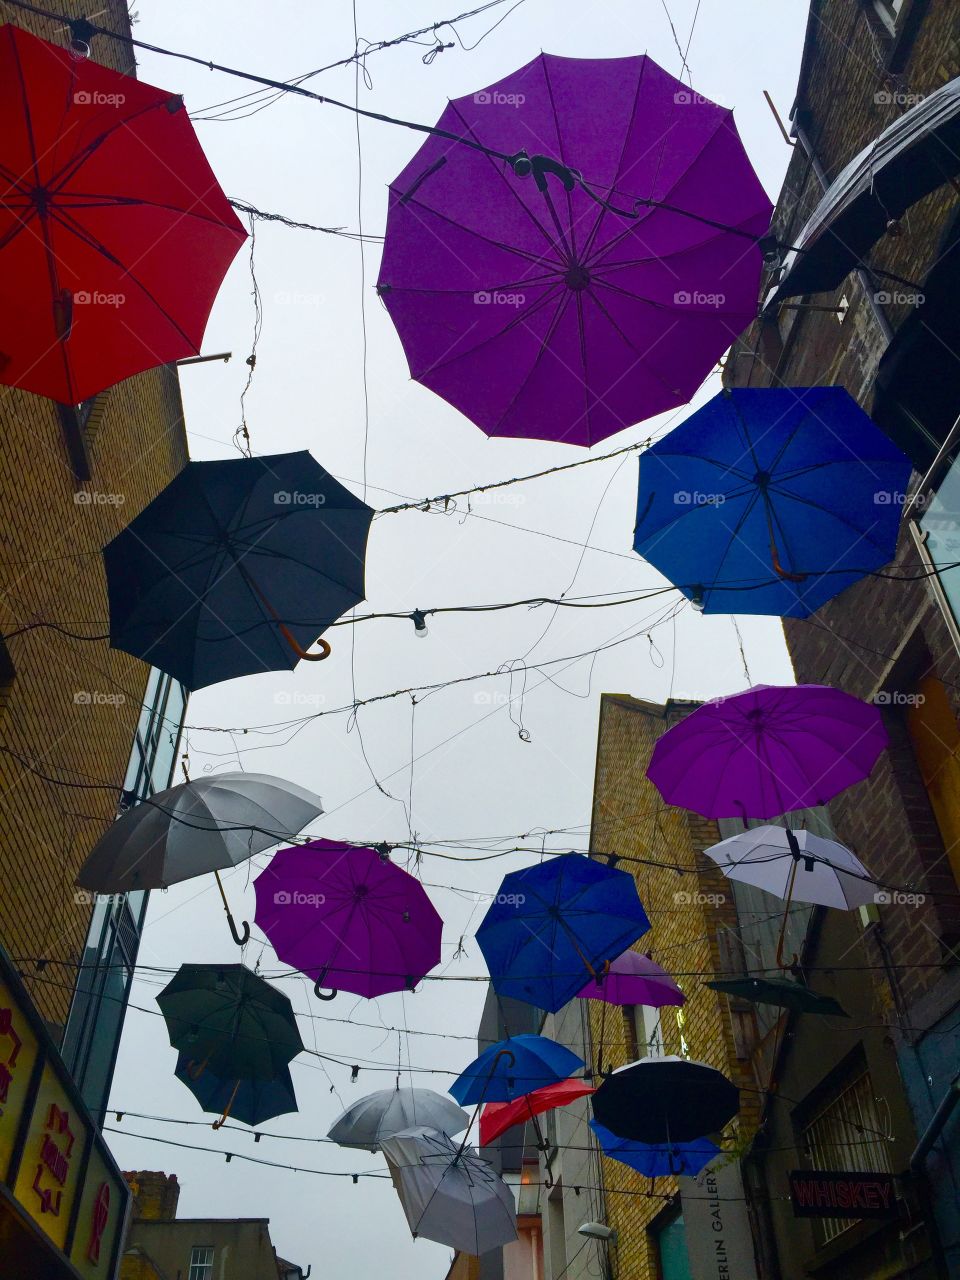 Umbrellas in Ireland 